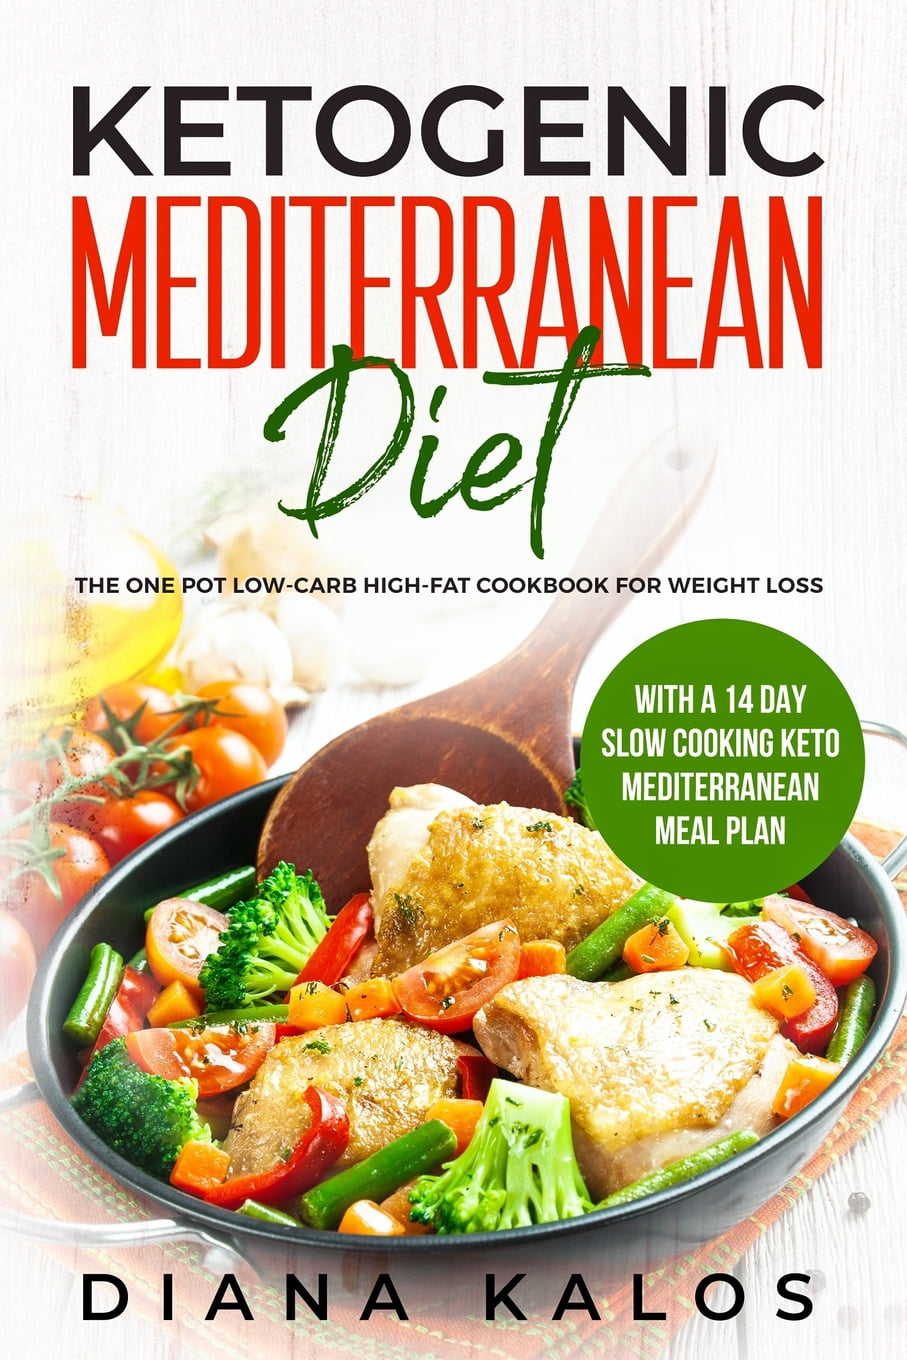 Mediterranean Diet Ketogenic Mediterranean Diet The One Pot Low Carb